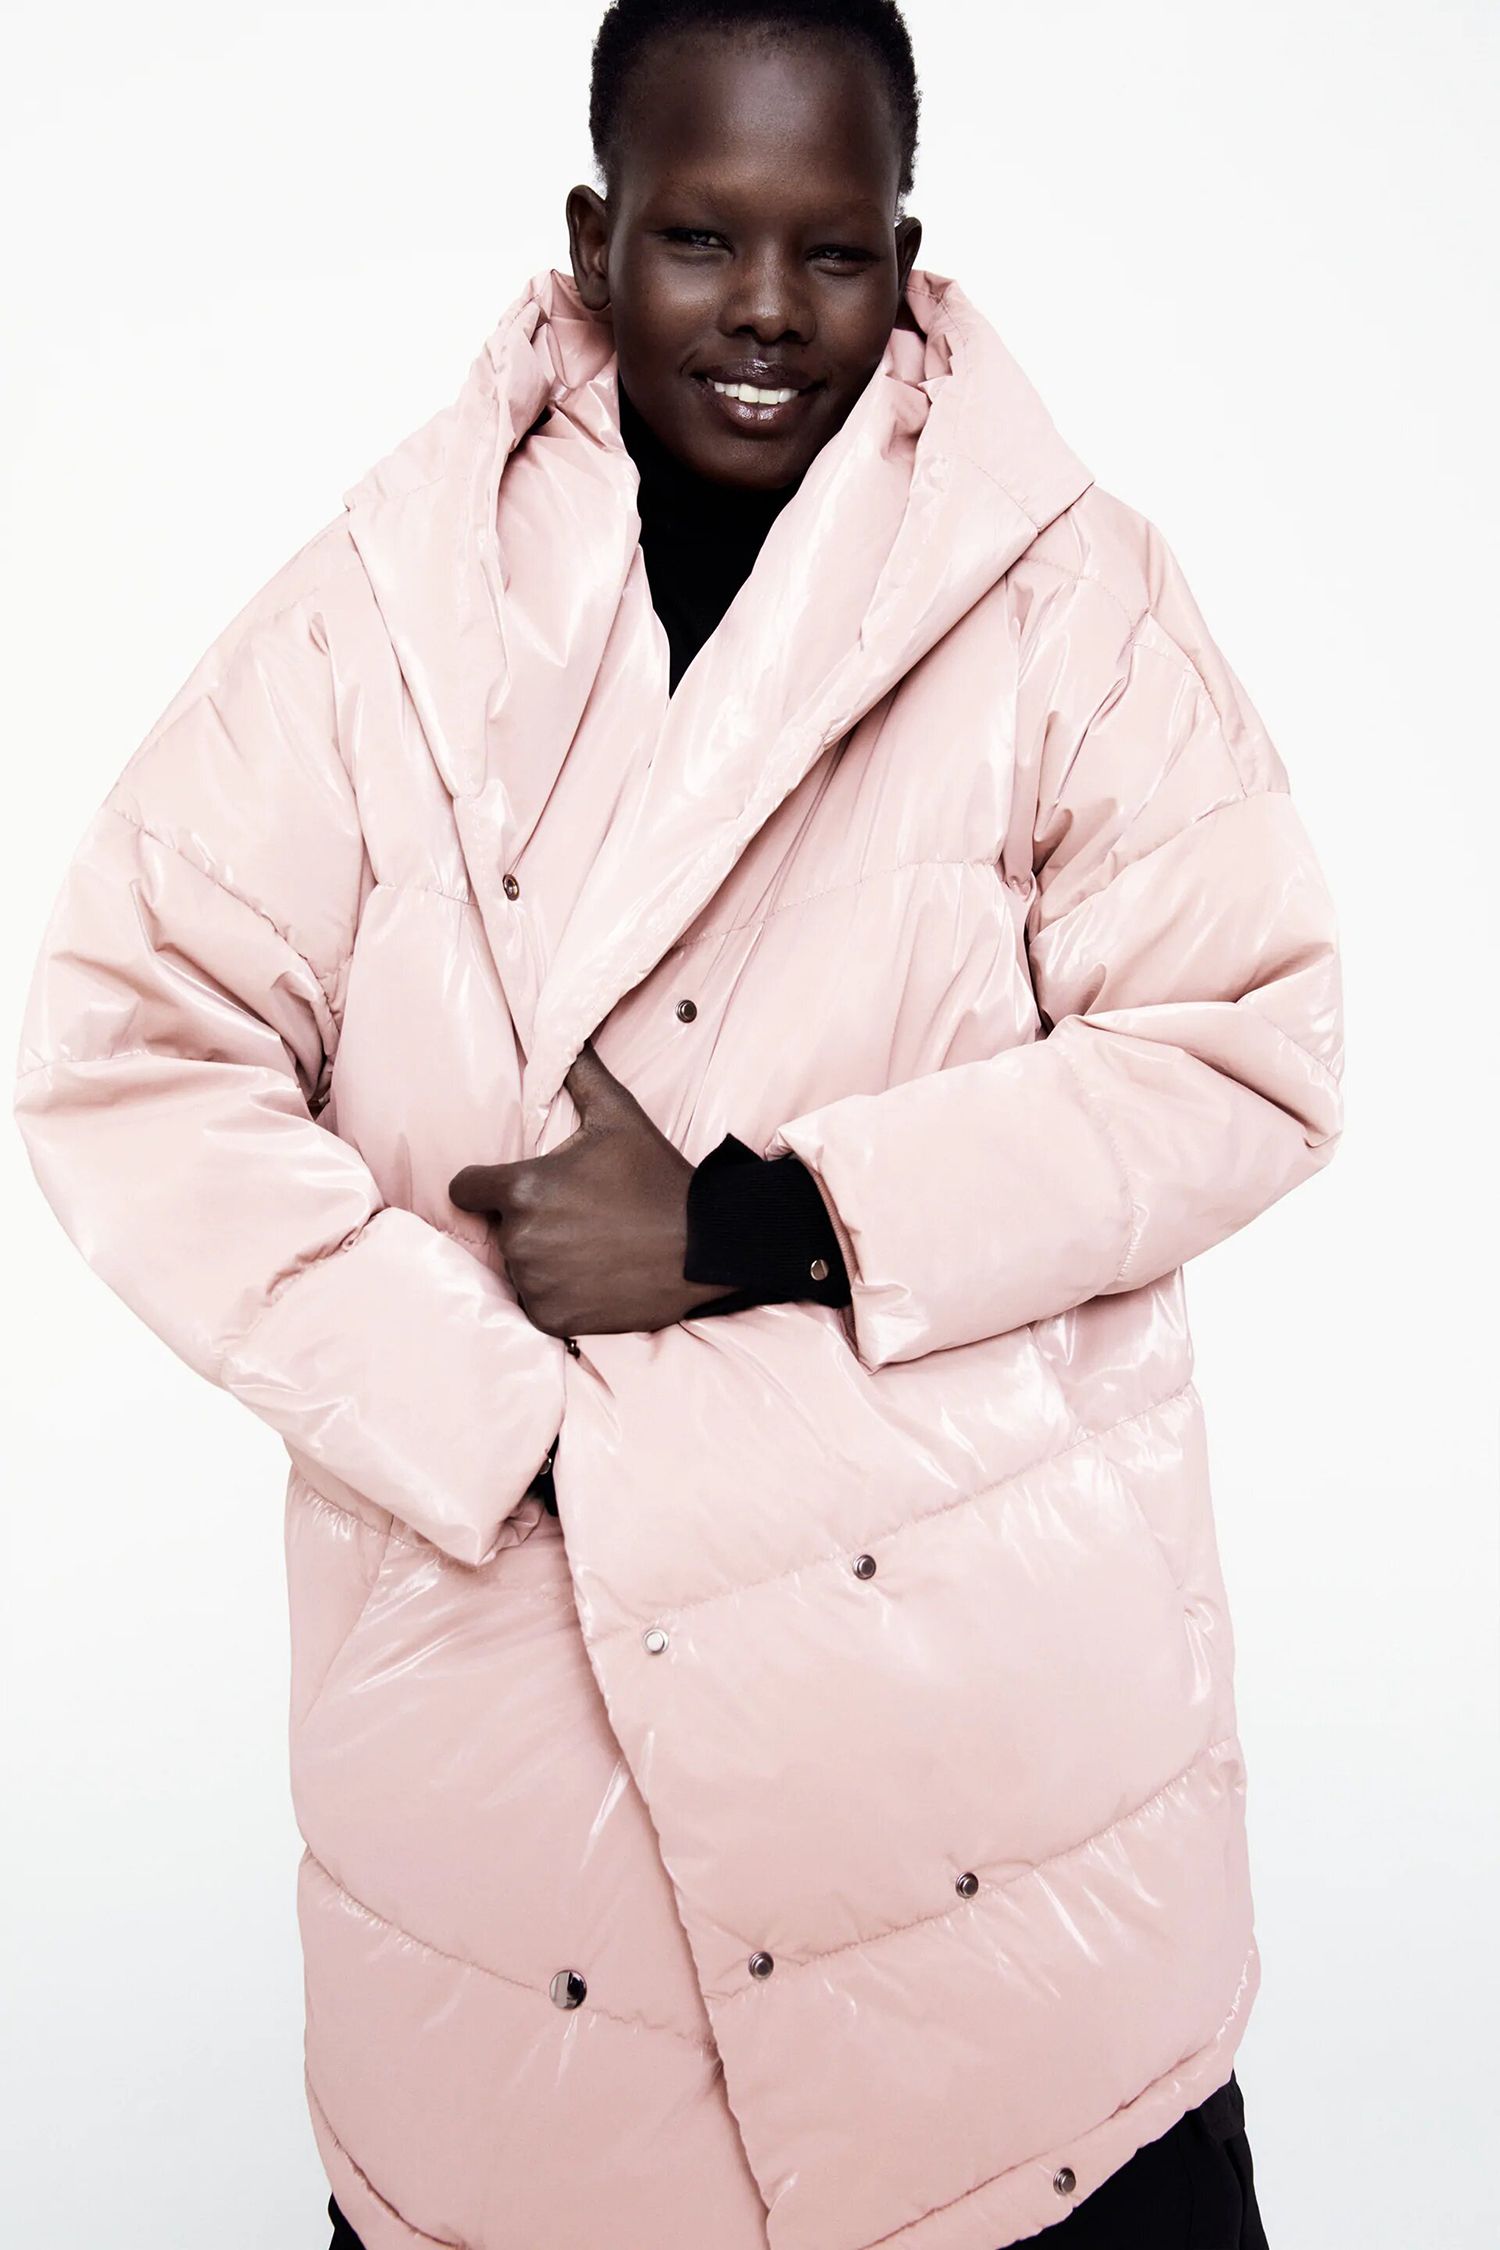 fascismo Saturar Siete El abrigo rosa de las rebajas de Zara para los días de frío